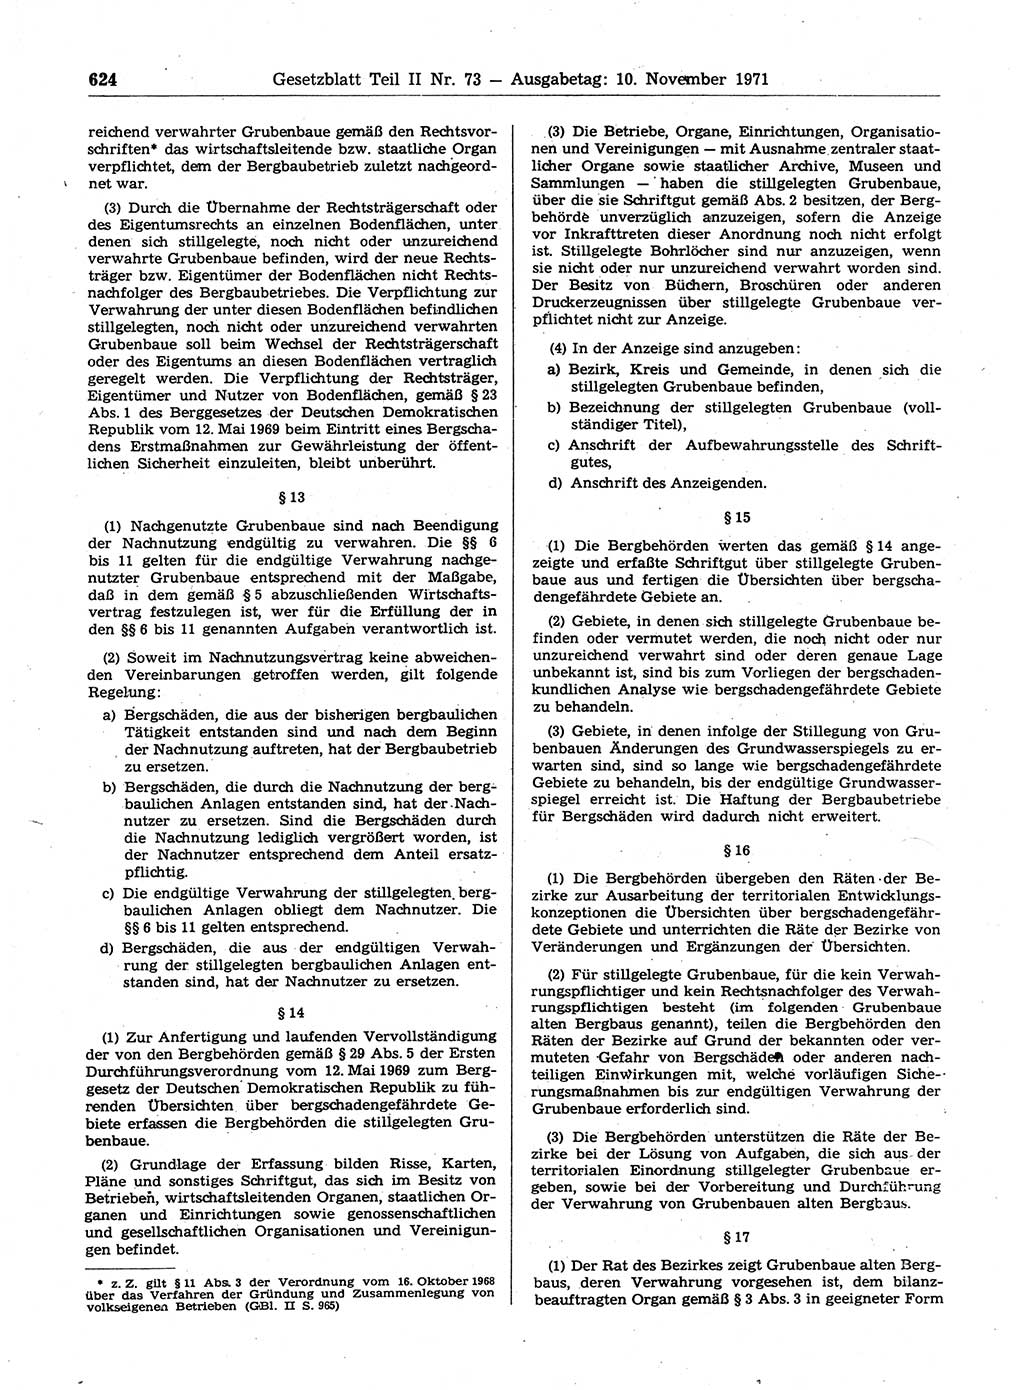 Gesetzblatt (GBl.) der Deutschen Demokratischen Republik (DDR) Teil ⅠⅠ 1971, Seite 624 (GBl. DDR ⅠⅠ 1971, S. 624)